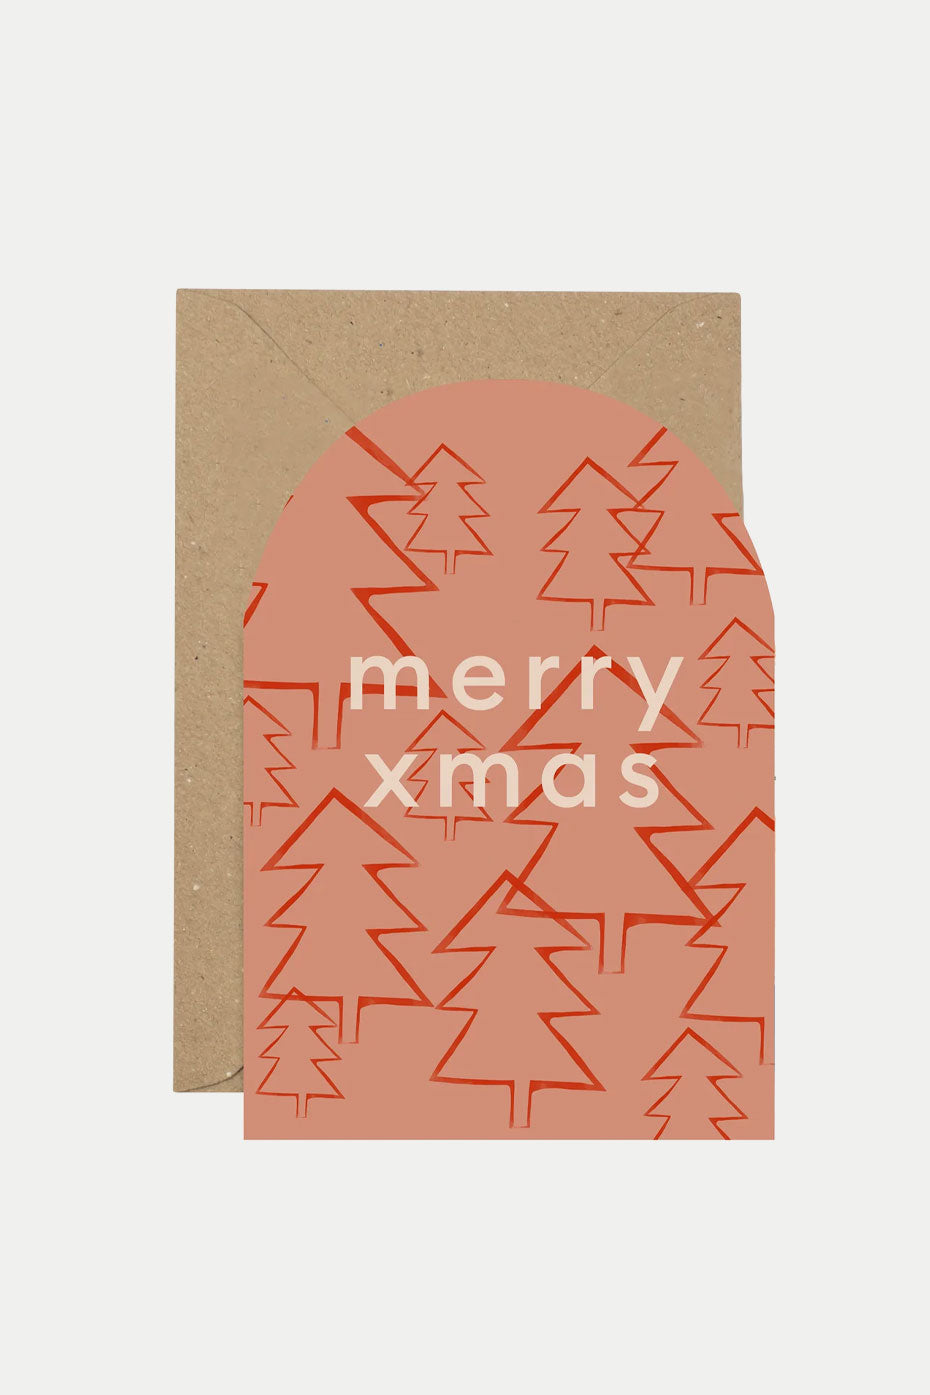 Plewsy 'merry Xmas' Christmas Card